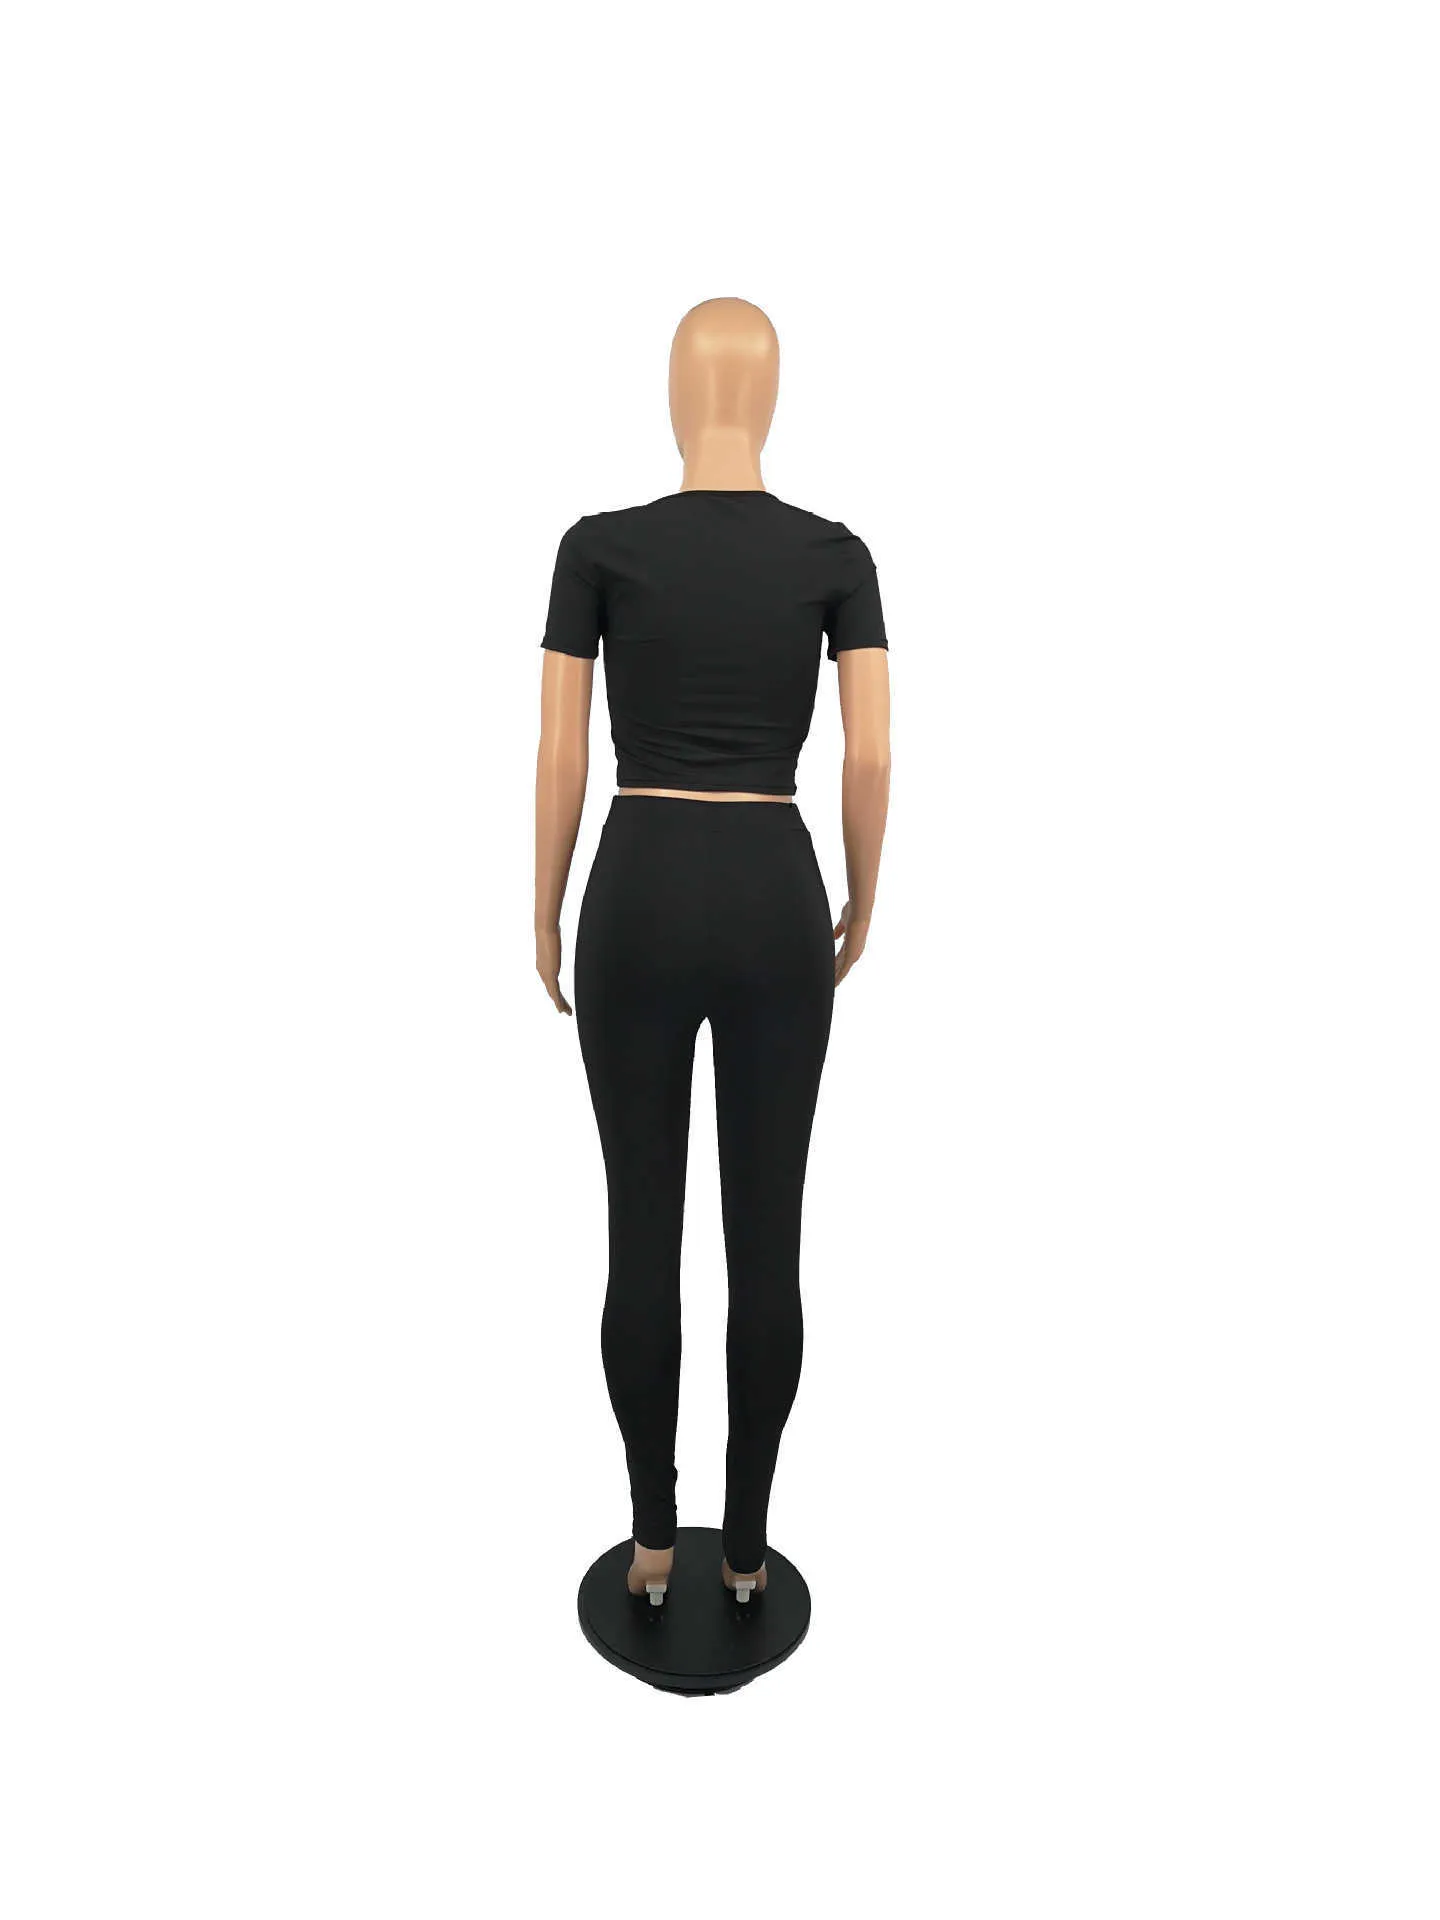 All Black Loungewear Donna Imposta vestiti Manica lunga Crop Top Vita alta Pantaloni da jogging Pantaloni sportivi Abbigliamento fitness sexy 2 pezzi 210525